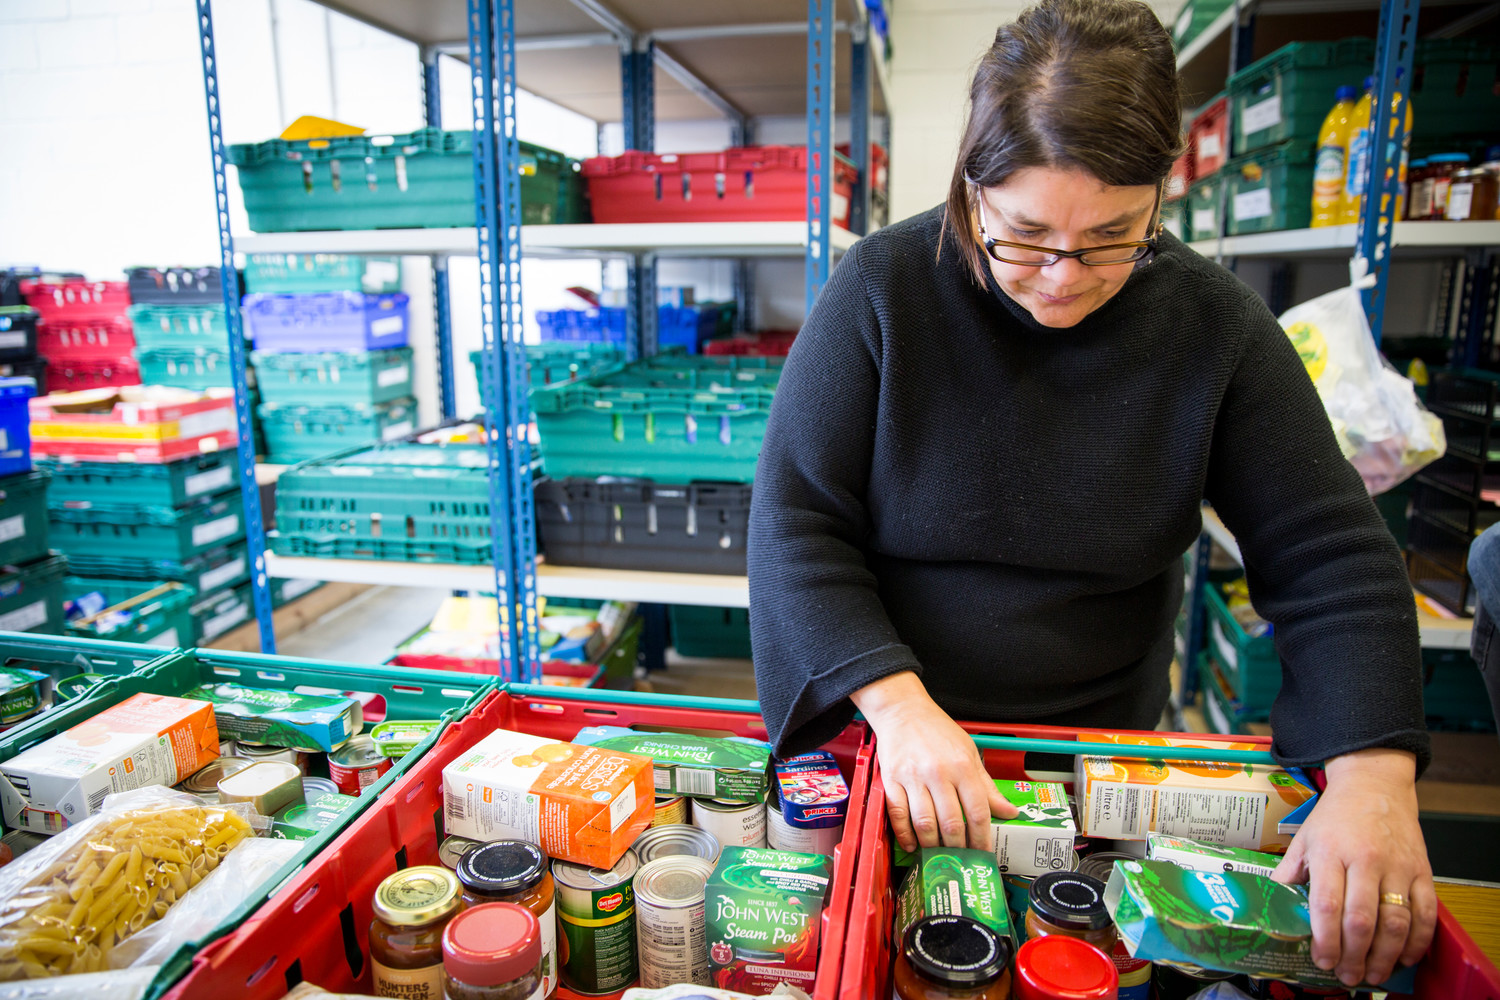 Asda and Burngreave Foodbank’s volunteer heroes help people get food bank help safely during ...